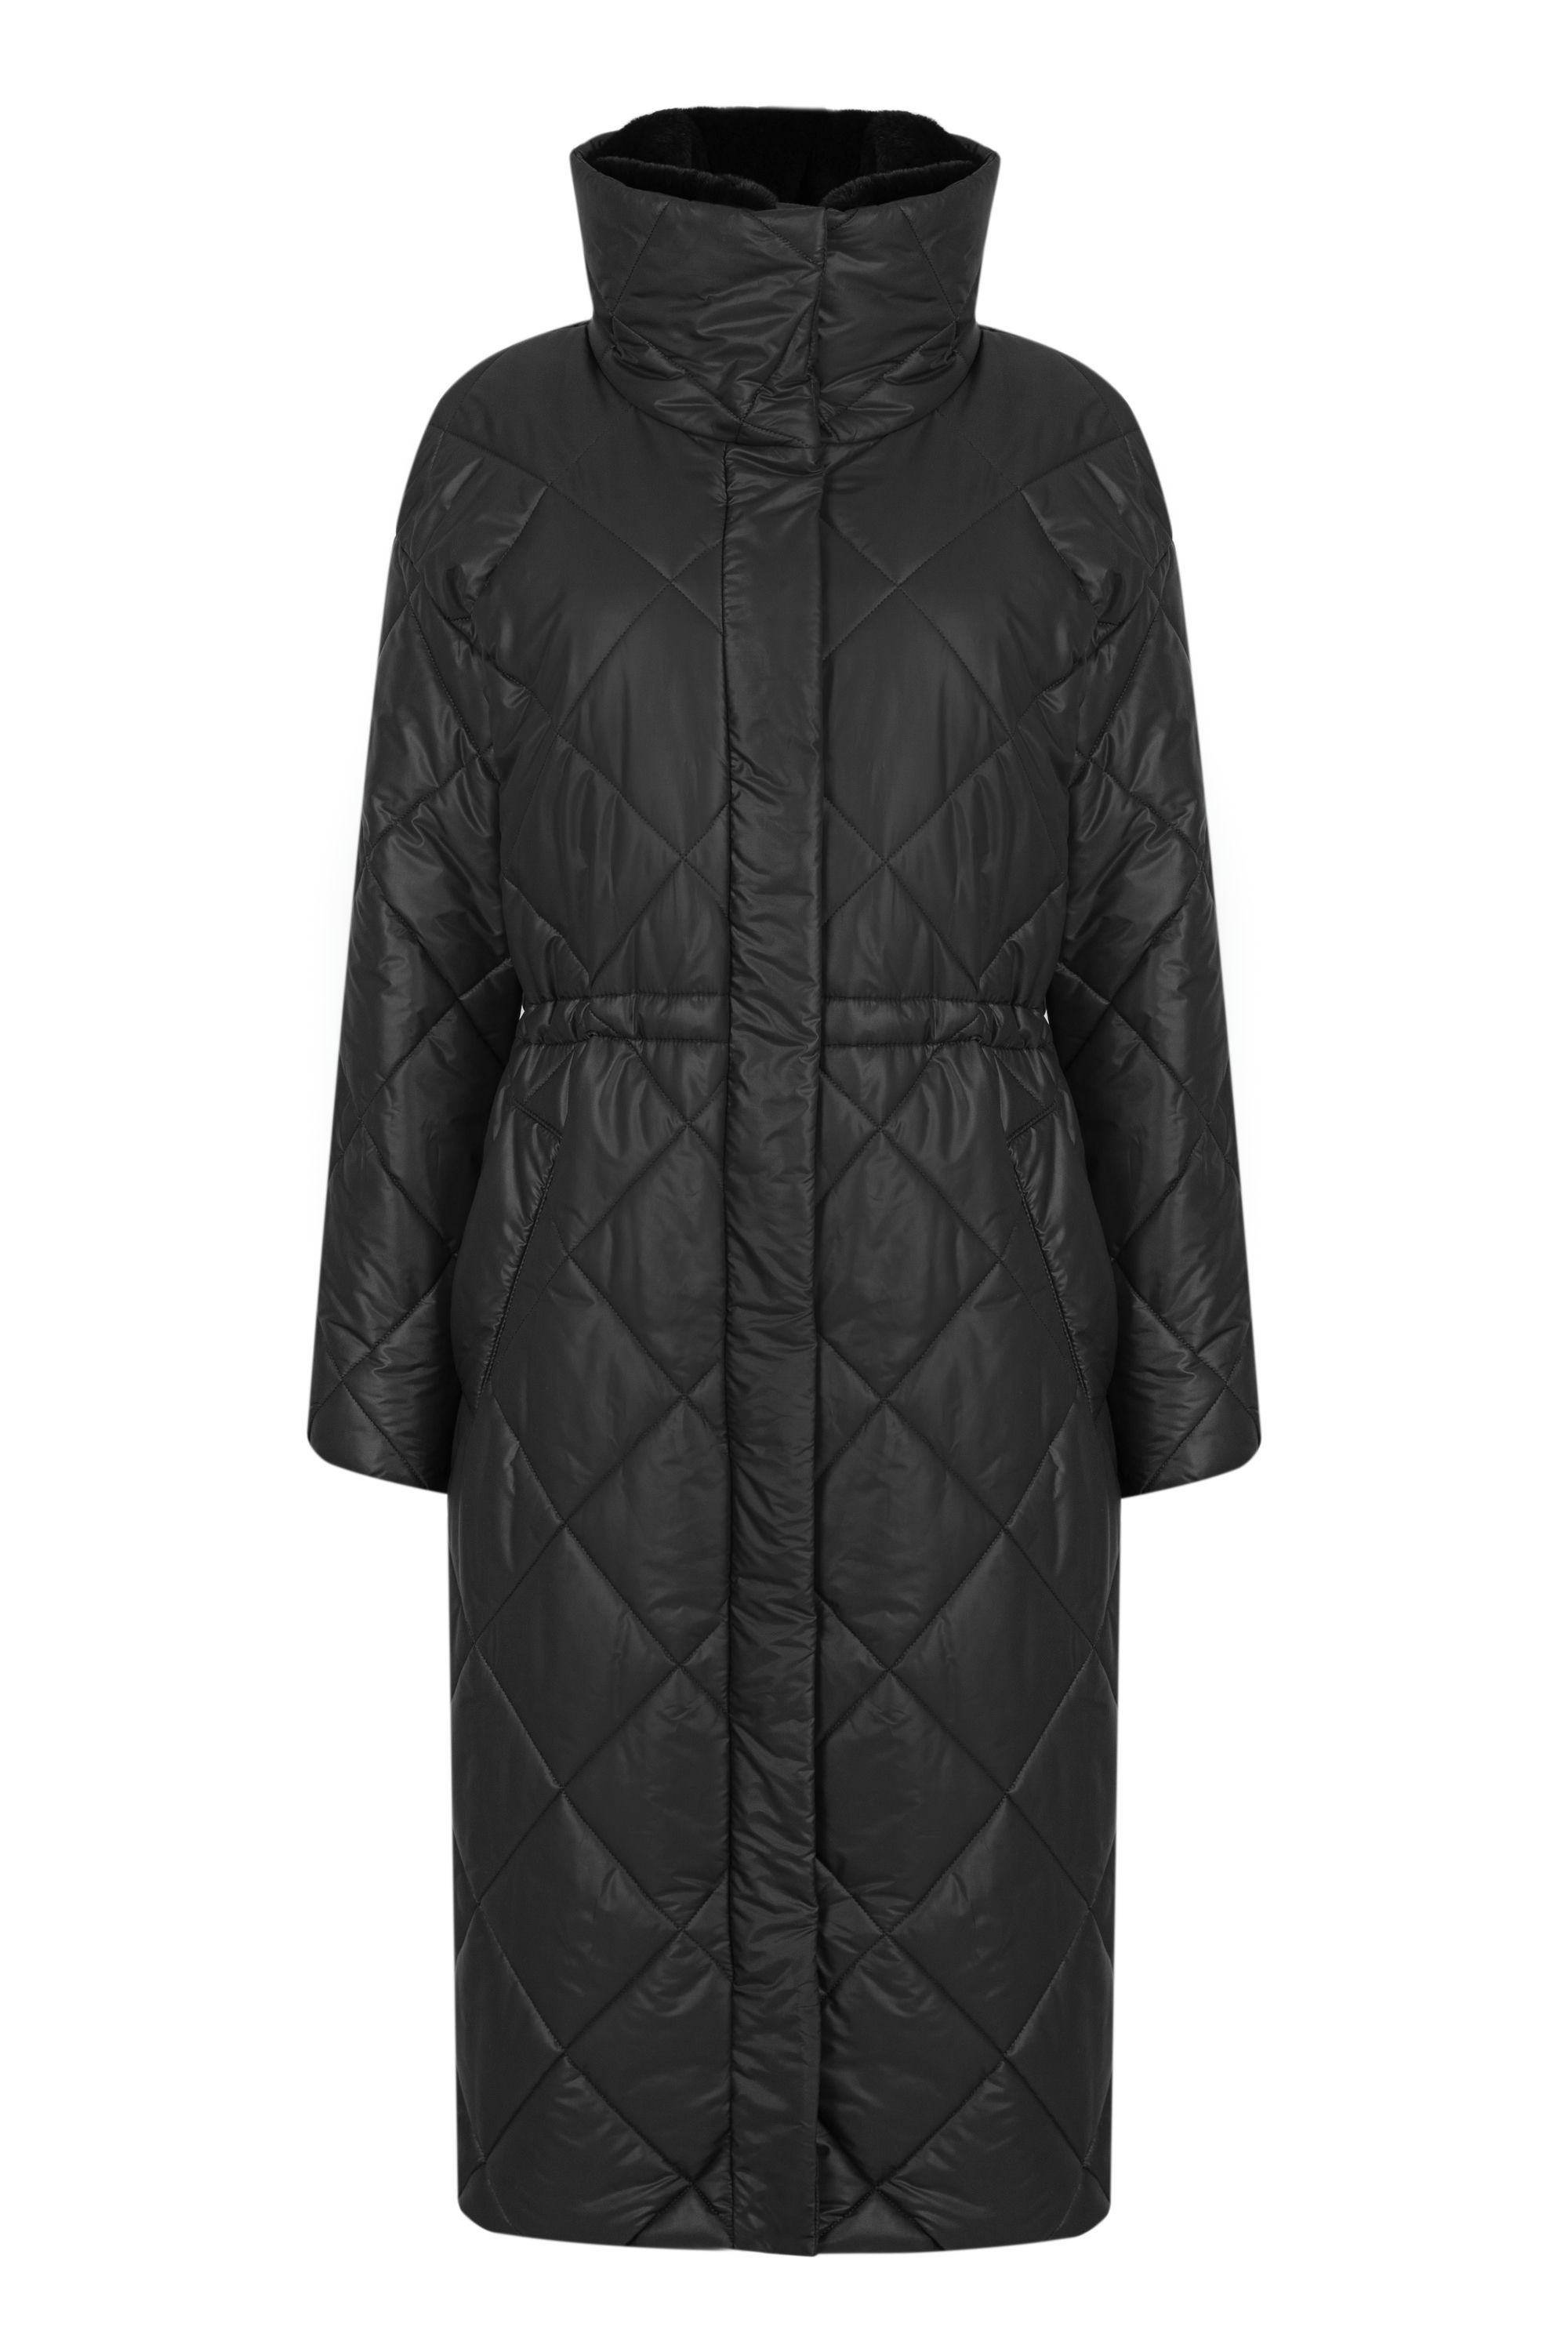 Пальто женское плащевое утепленное 5S-12411-1